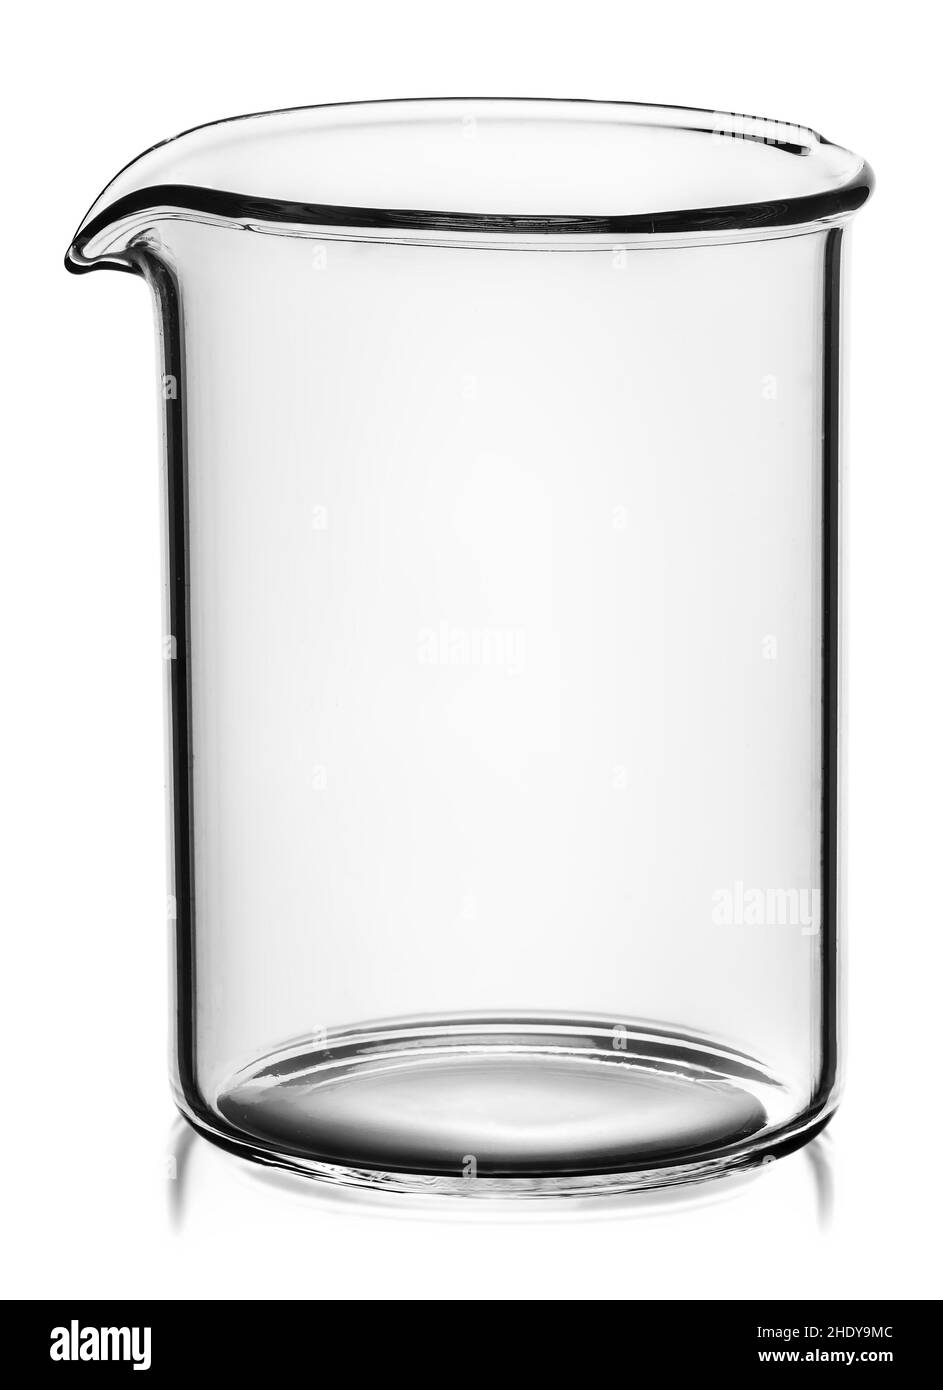 https://c8.alamy.com/compes/2hdy9mc/vaso-jarra-recipiente-vaso-utensilios-de-vidrio-cristal-roto-jarras-tarro-ollas-vasos-de-precipitados-2hdy9mc.jpg